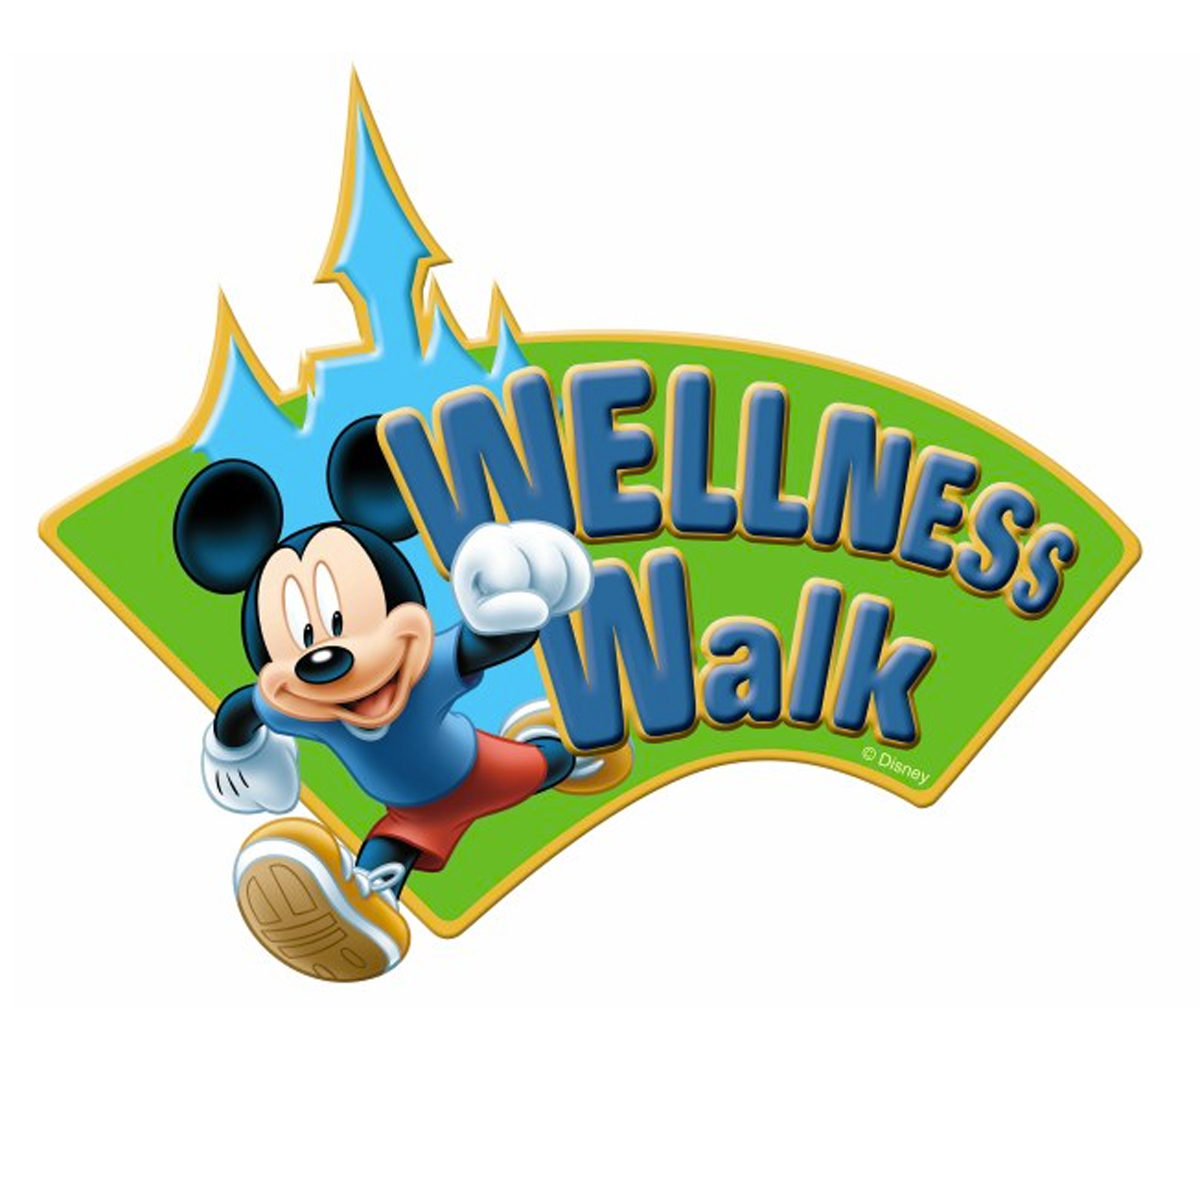 Wellness-Walk-Logo.jpg